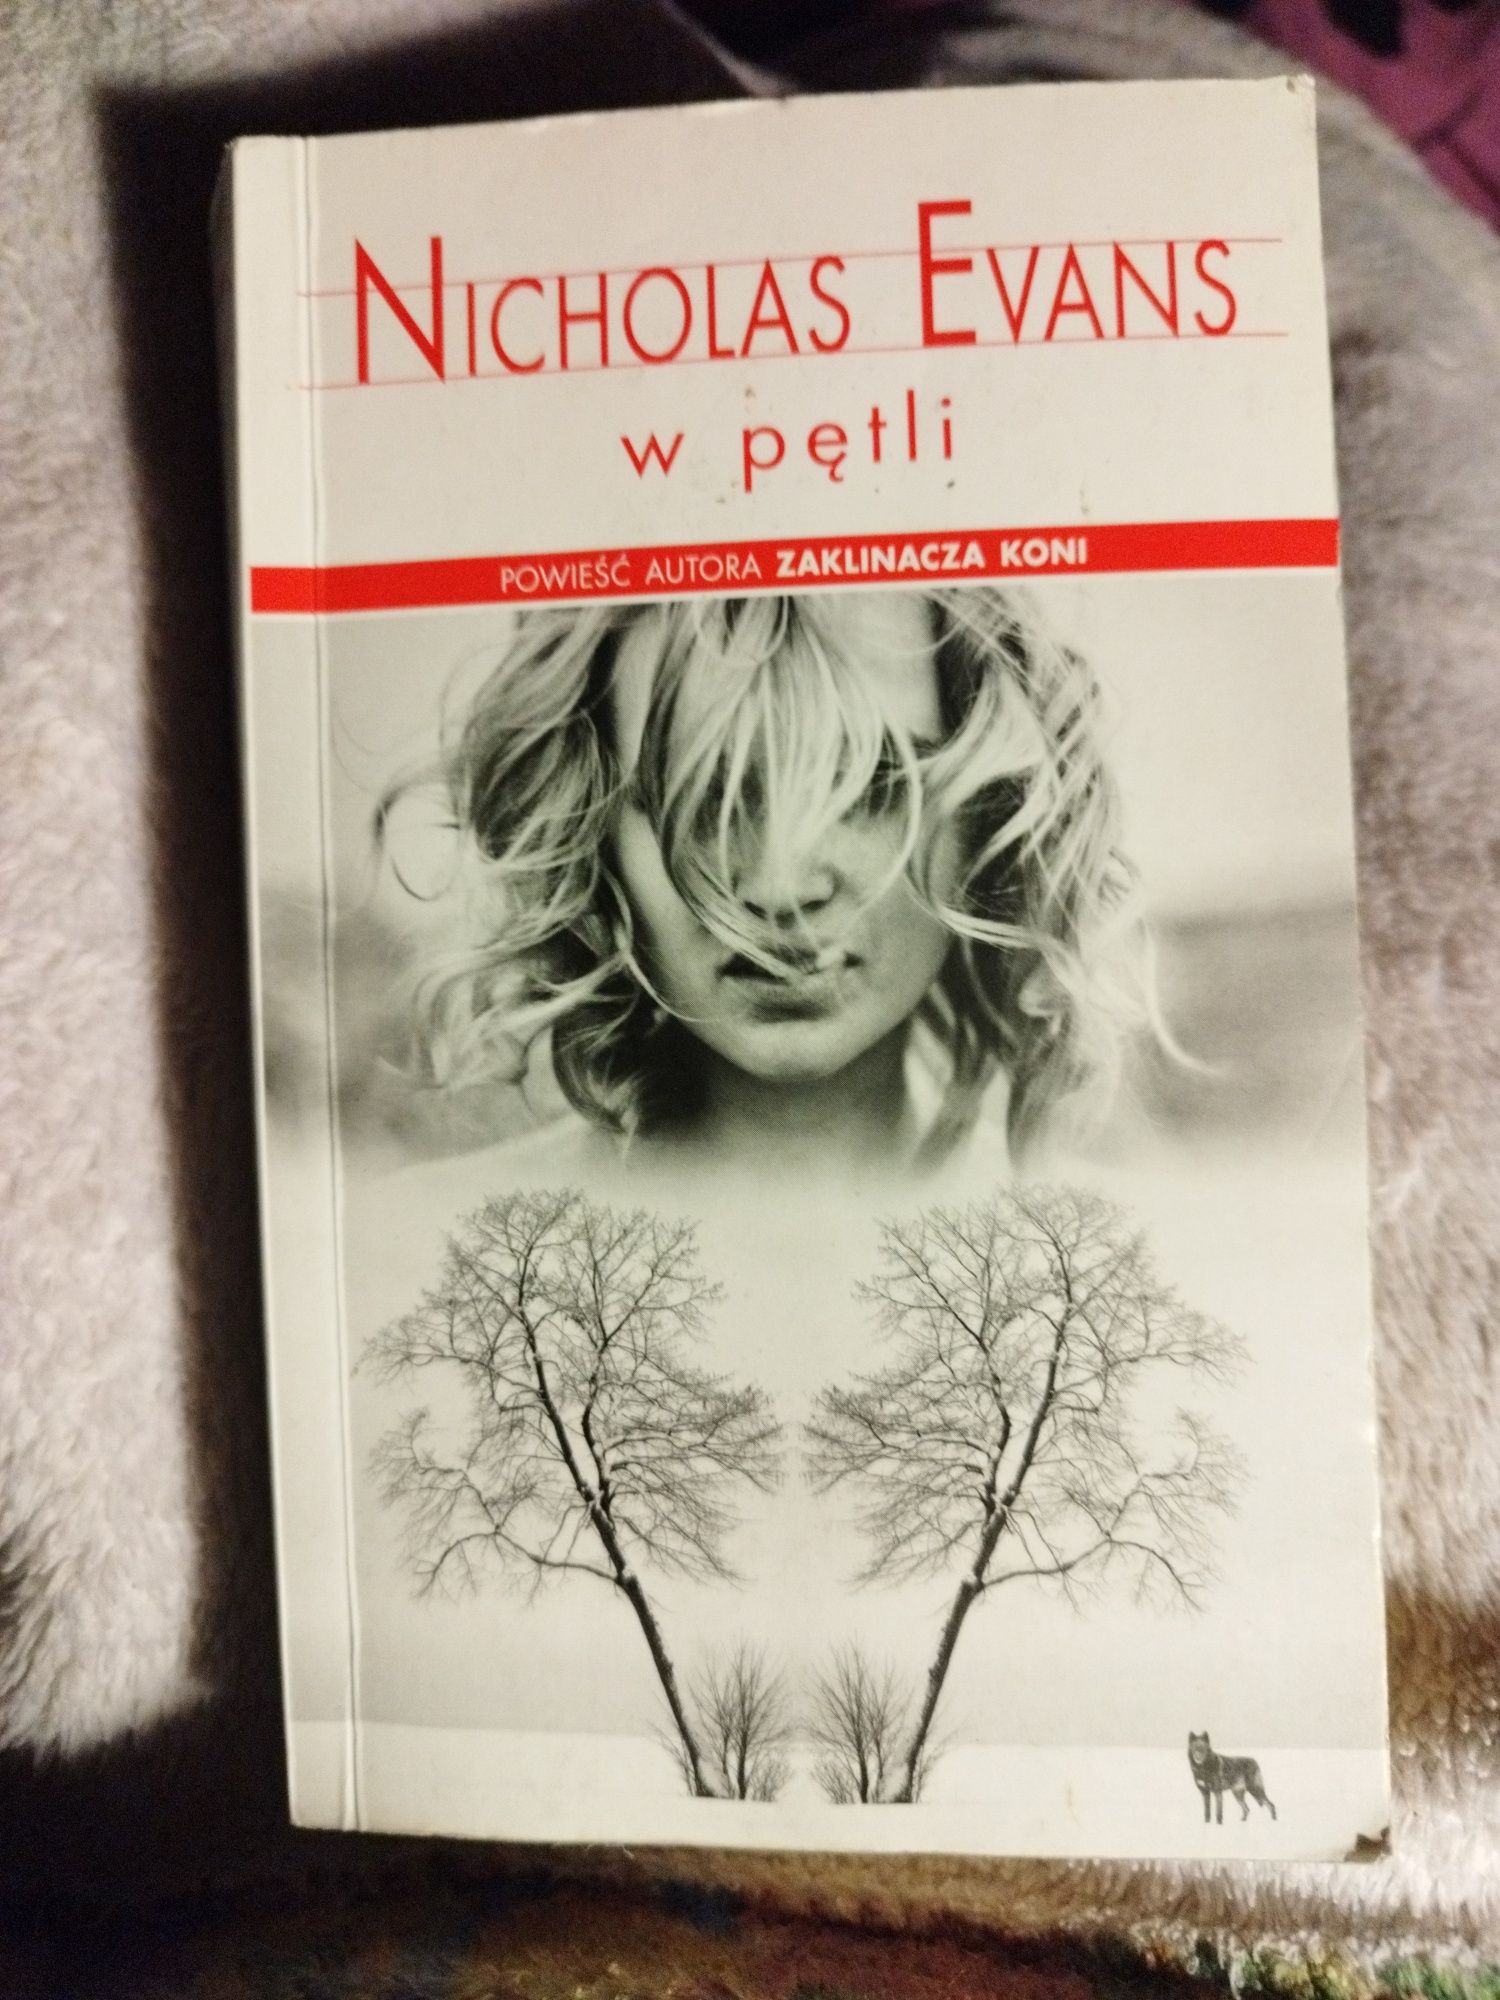 Nicholas Evans ,,W pętli'' książka o wilkach.